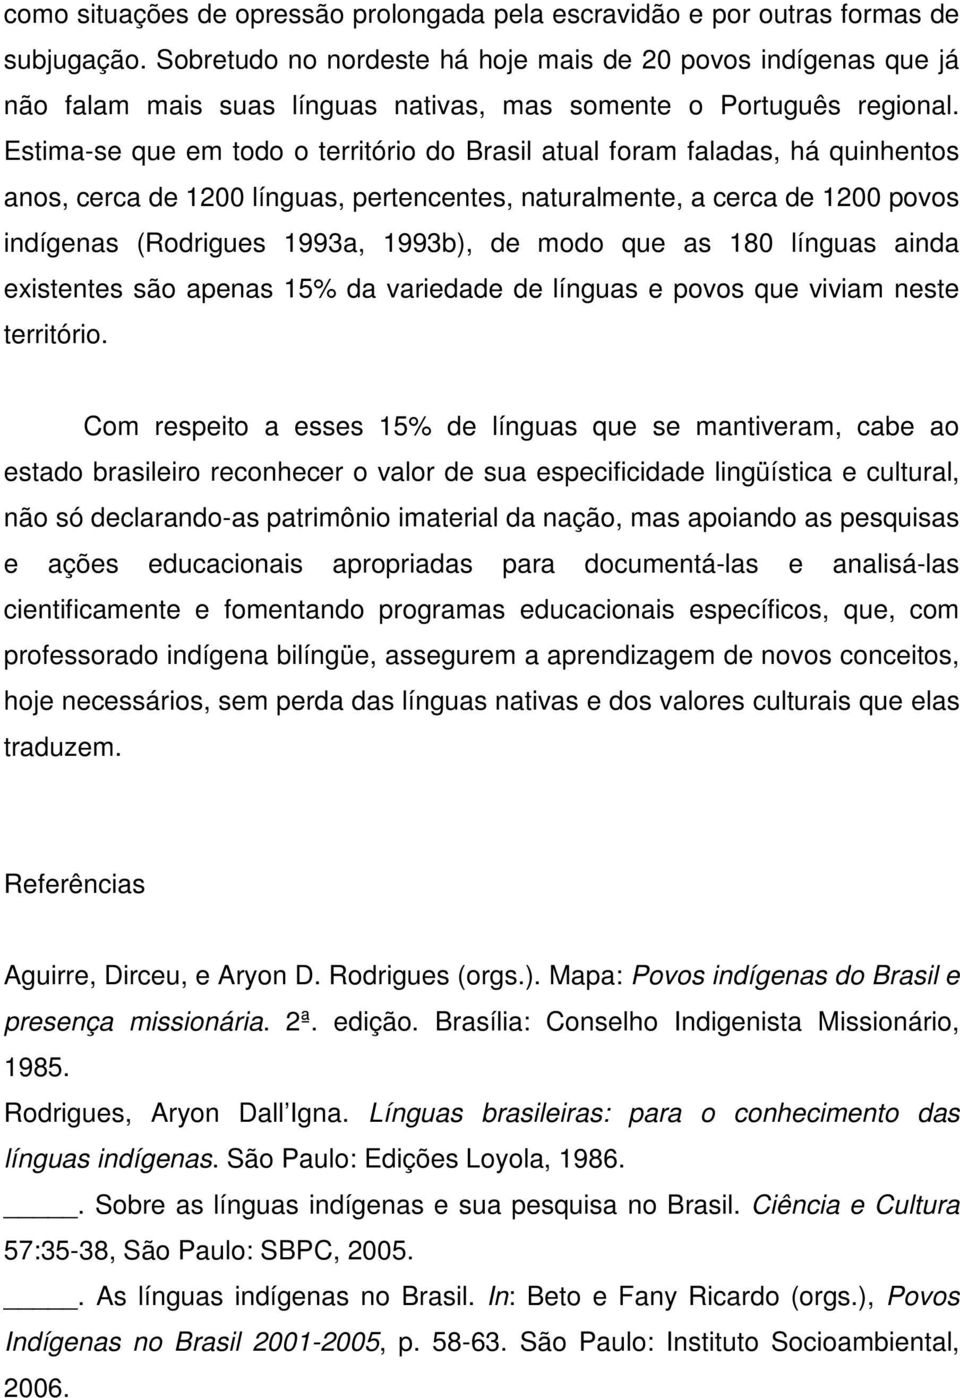 Estima-se que em todo o território do Brasil atual foram faladas, há quinhentos anos, cerca de 1200 línguas, pertencentes, naturalmente, a cerca de 1200 povos indígenas (Rodrigues 1993a, 1993b), de